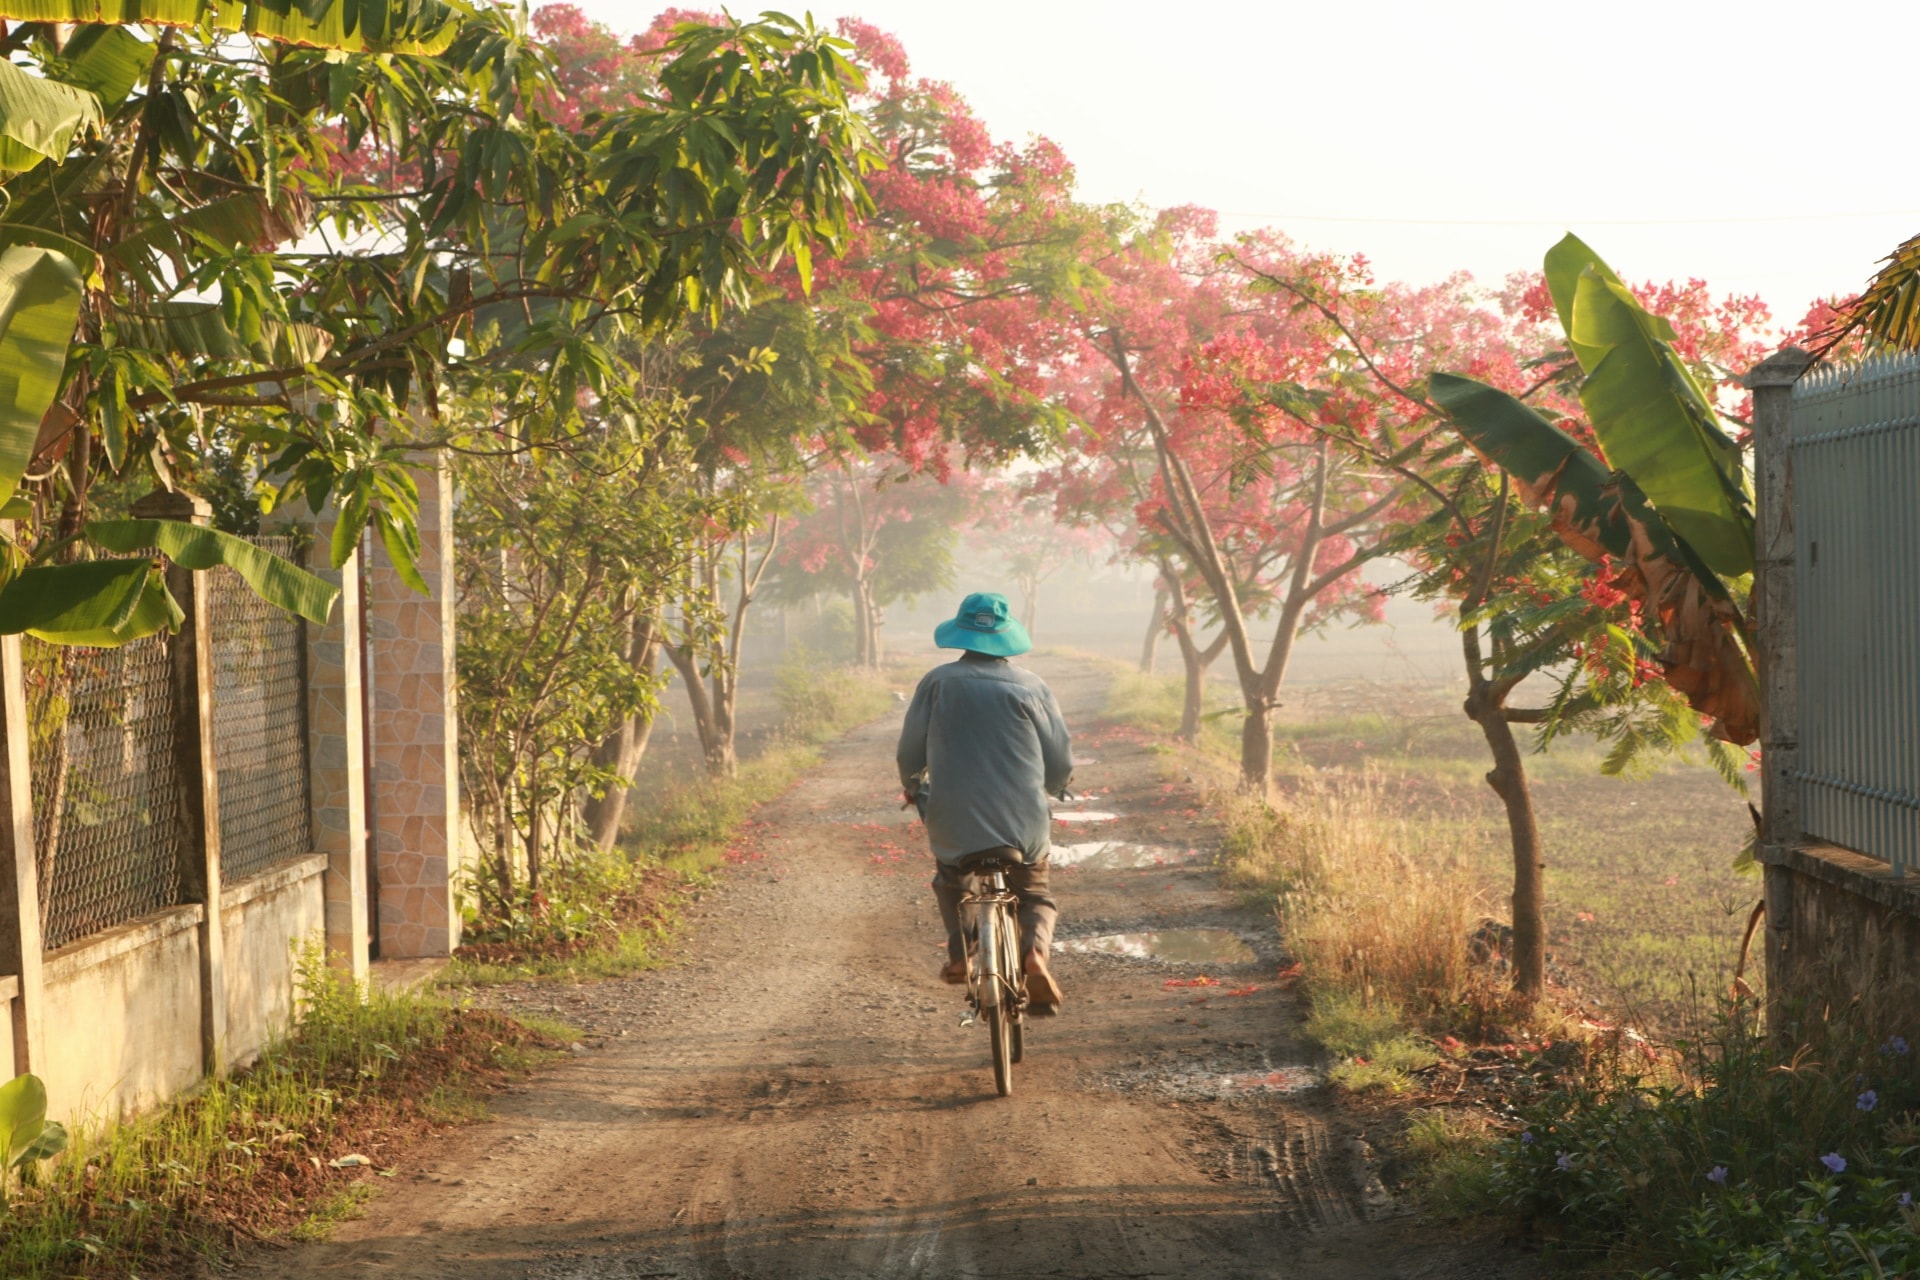 Thưởng thức bức ảnh phong cảnh đẹp của một làng quê Việt Nam có thể giúp bạn giải tỏa stress và tìm lại sự cân bằng trong cuộc sống. Những cánh đồng, thung lũng xanh thẳm và những người dân sống đơn giản sẽ đem lại cho bạn một bầu không khí trong lành và bình yên nhưng đầy năng lượng.